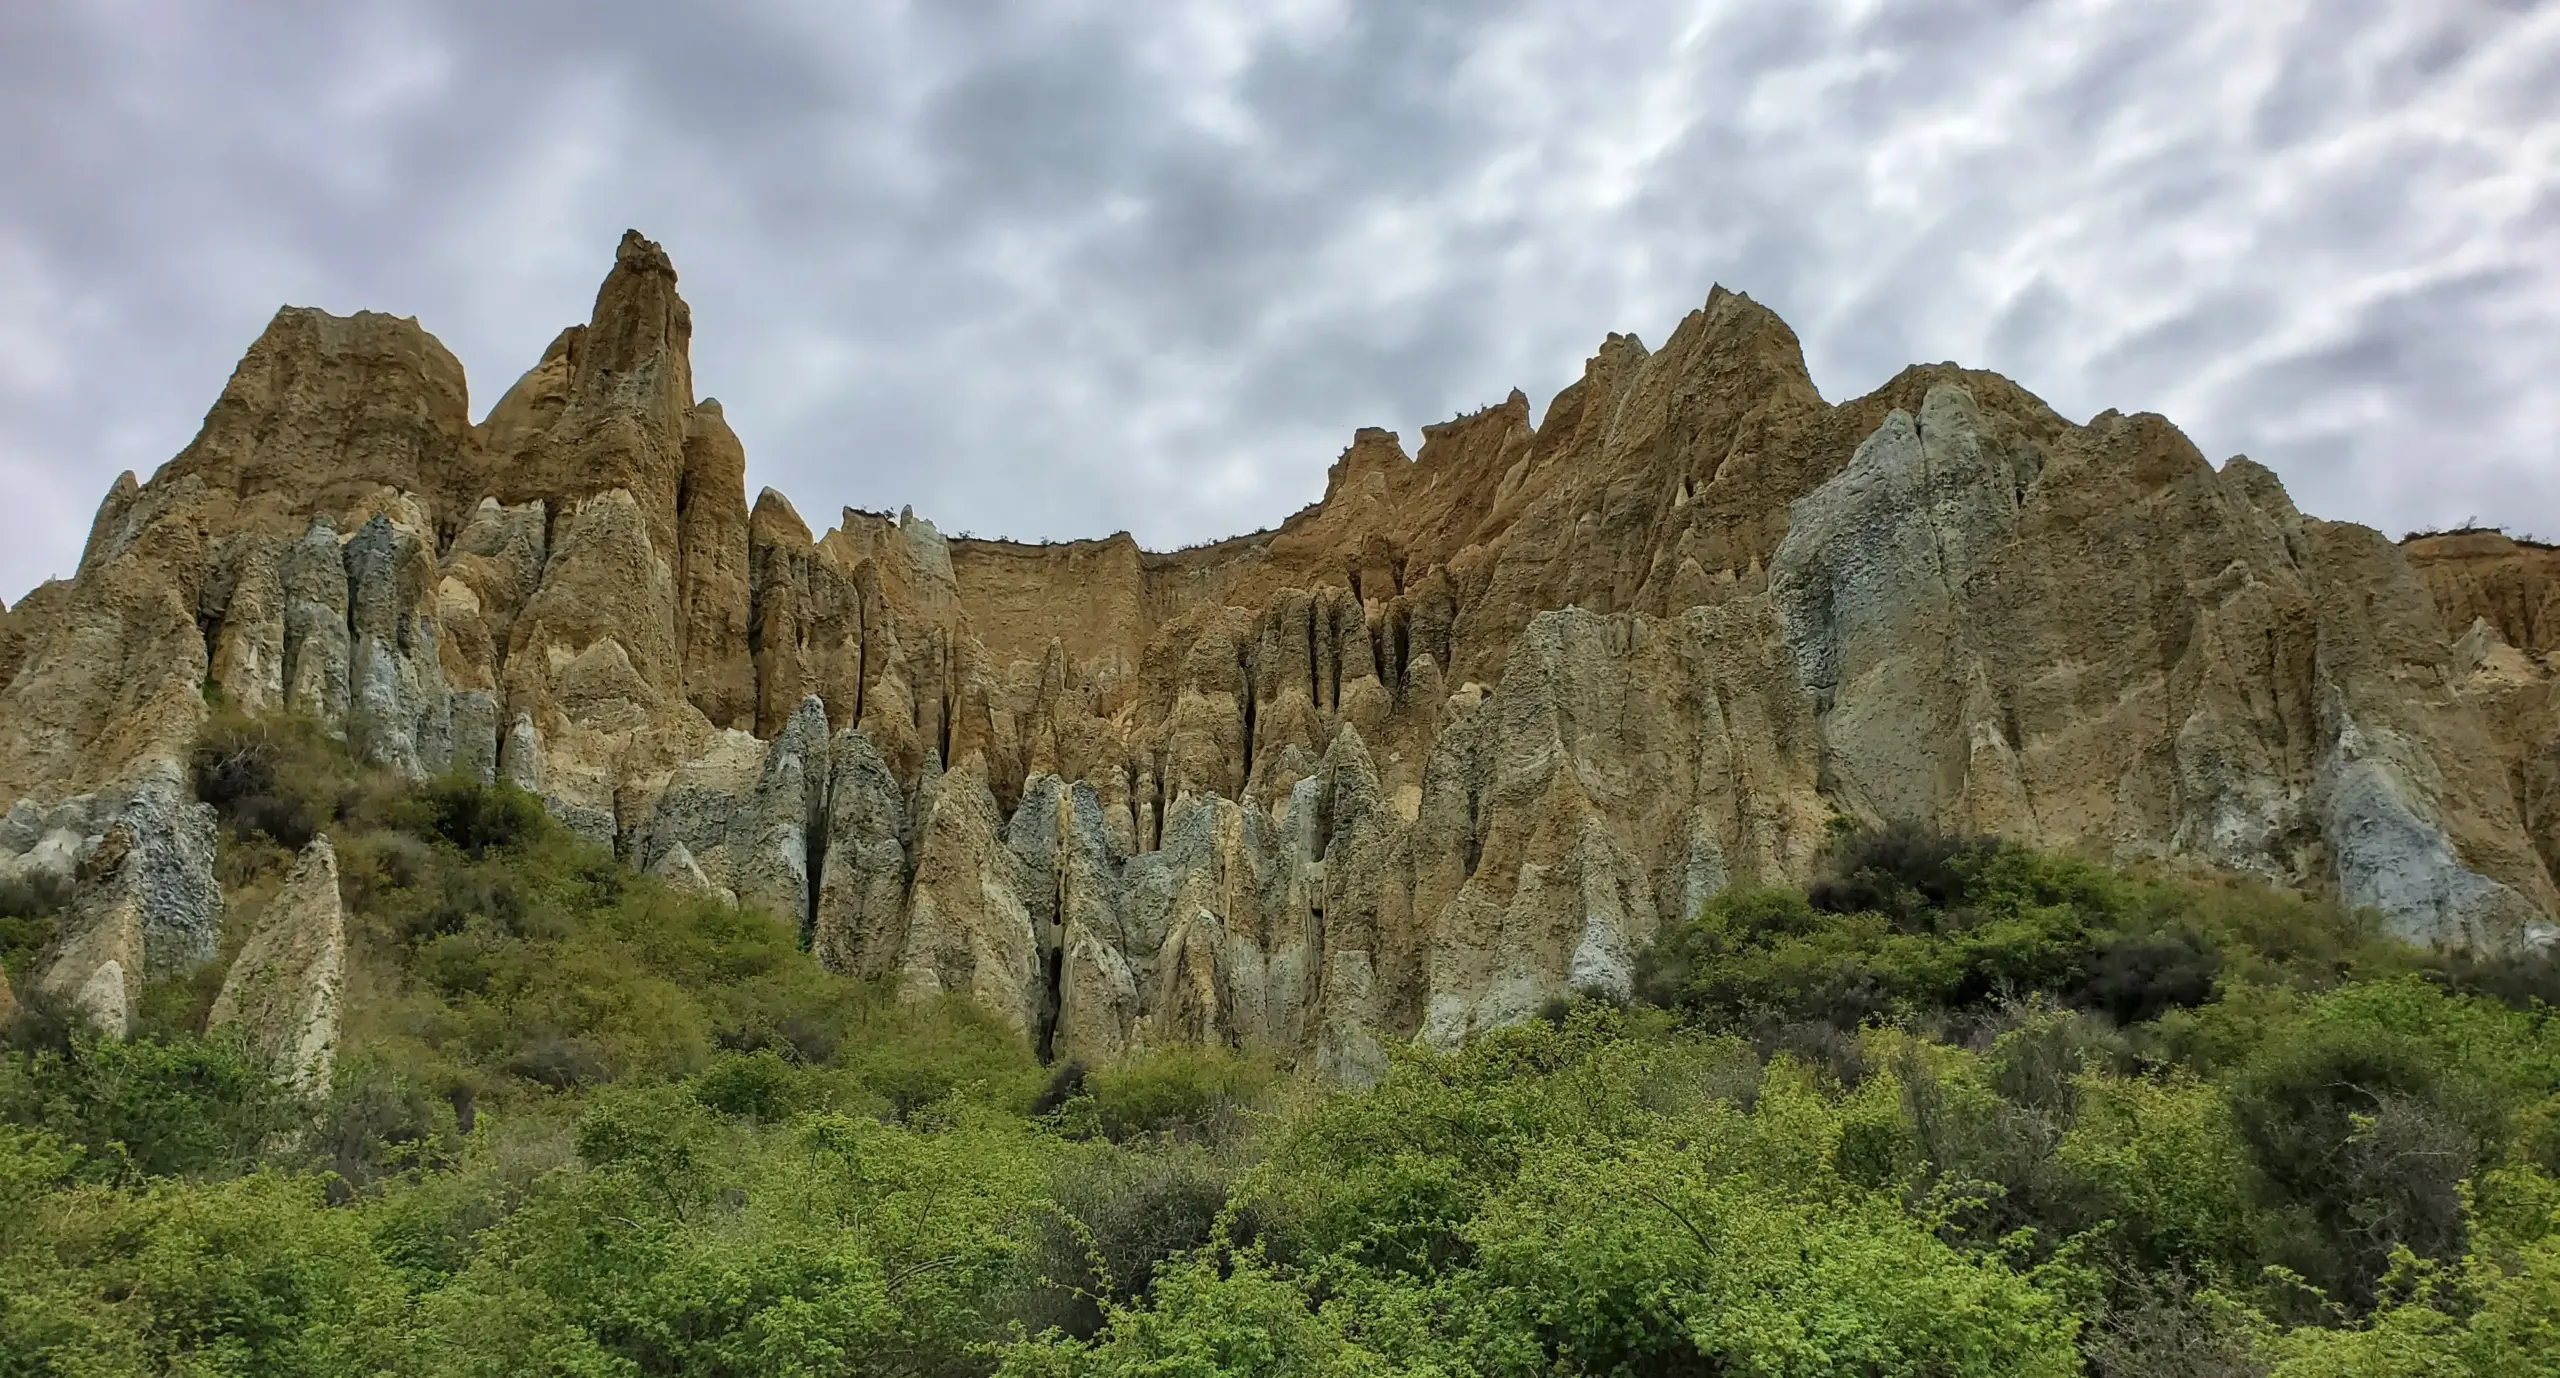 Omarama Clay cliffs view